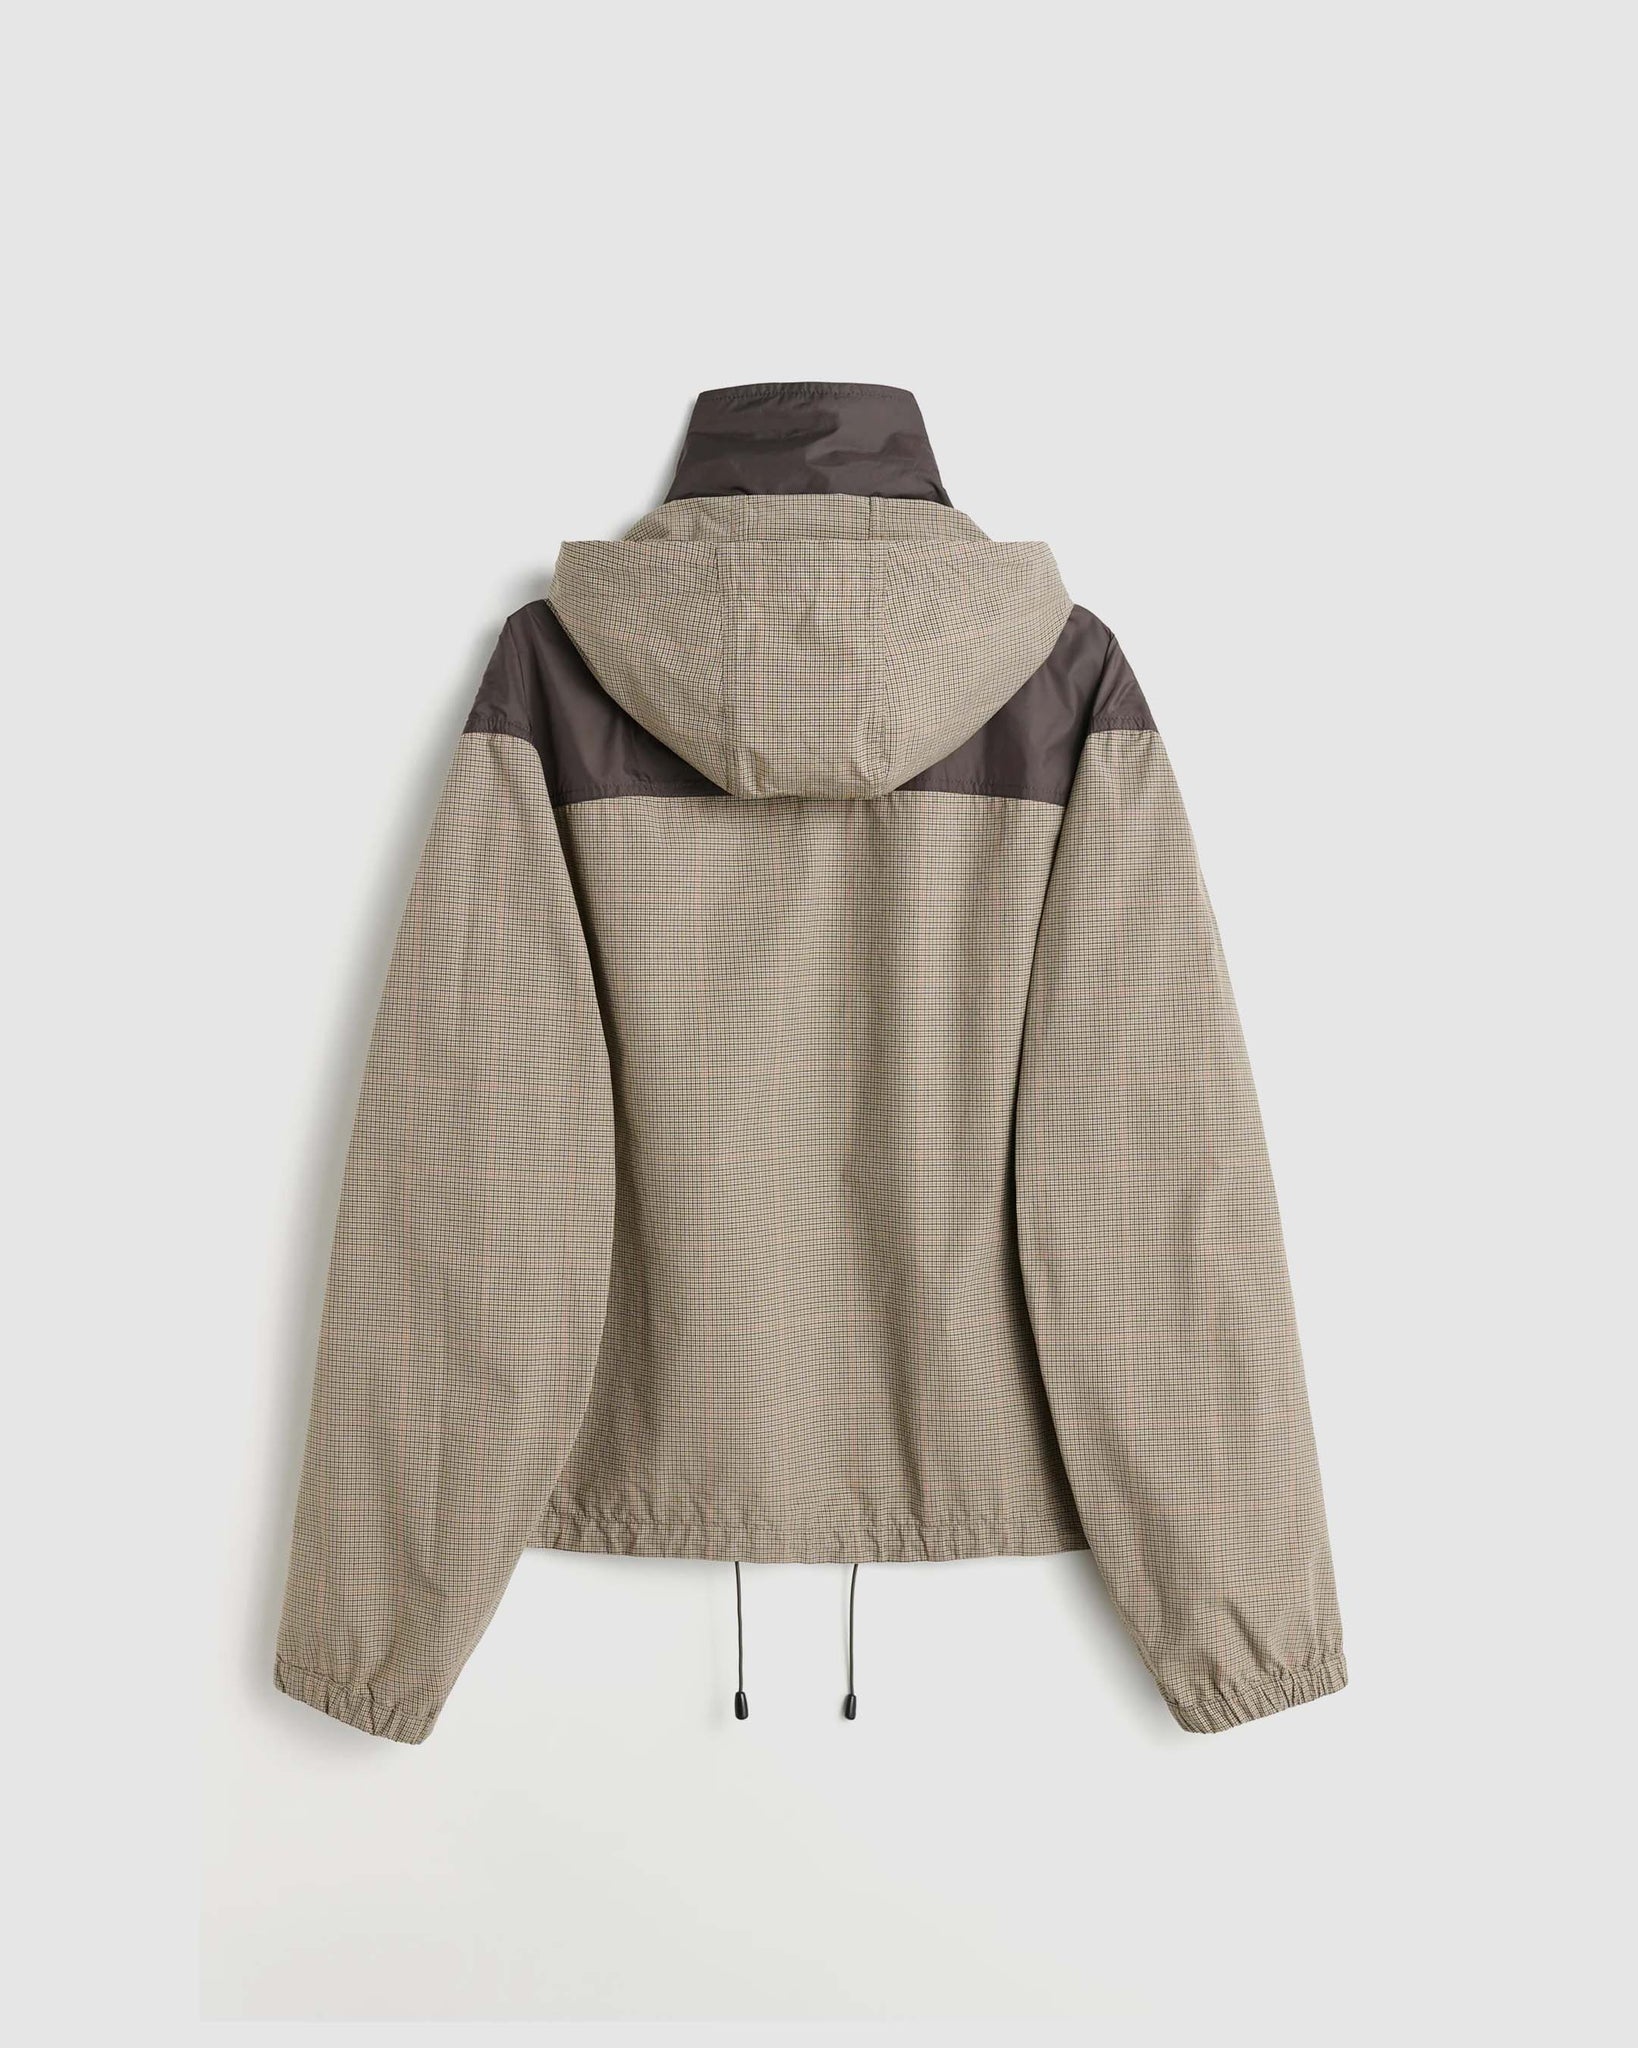 Shigatsu Jacket - Bukhansan Check Cordura Cotton